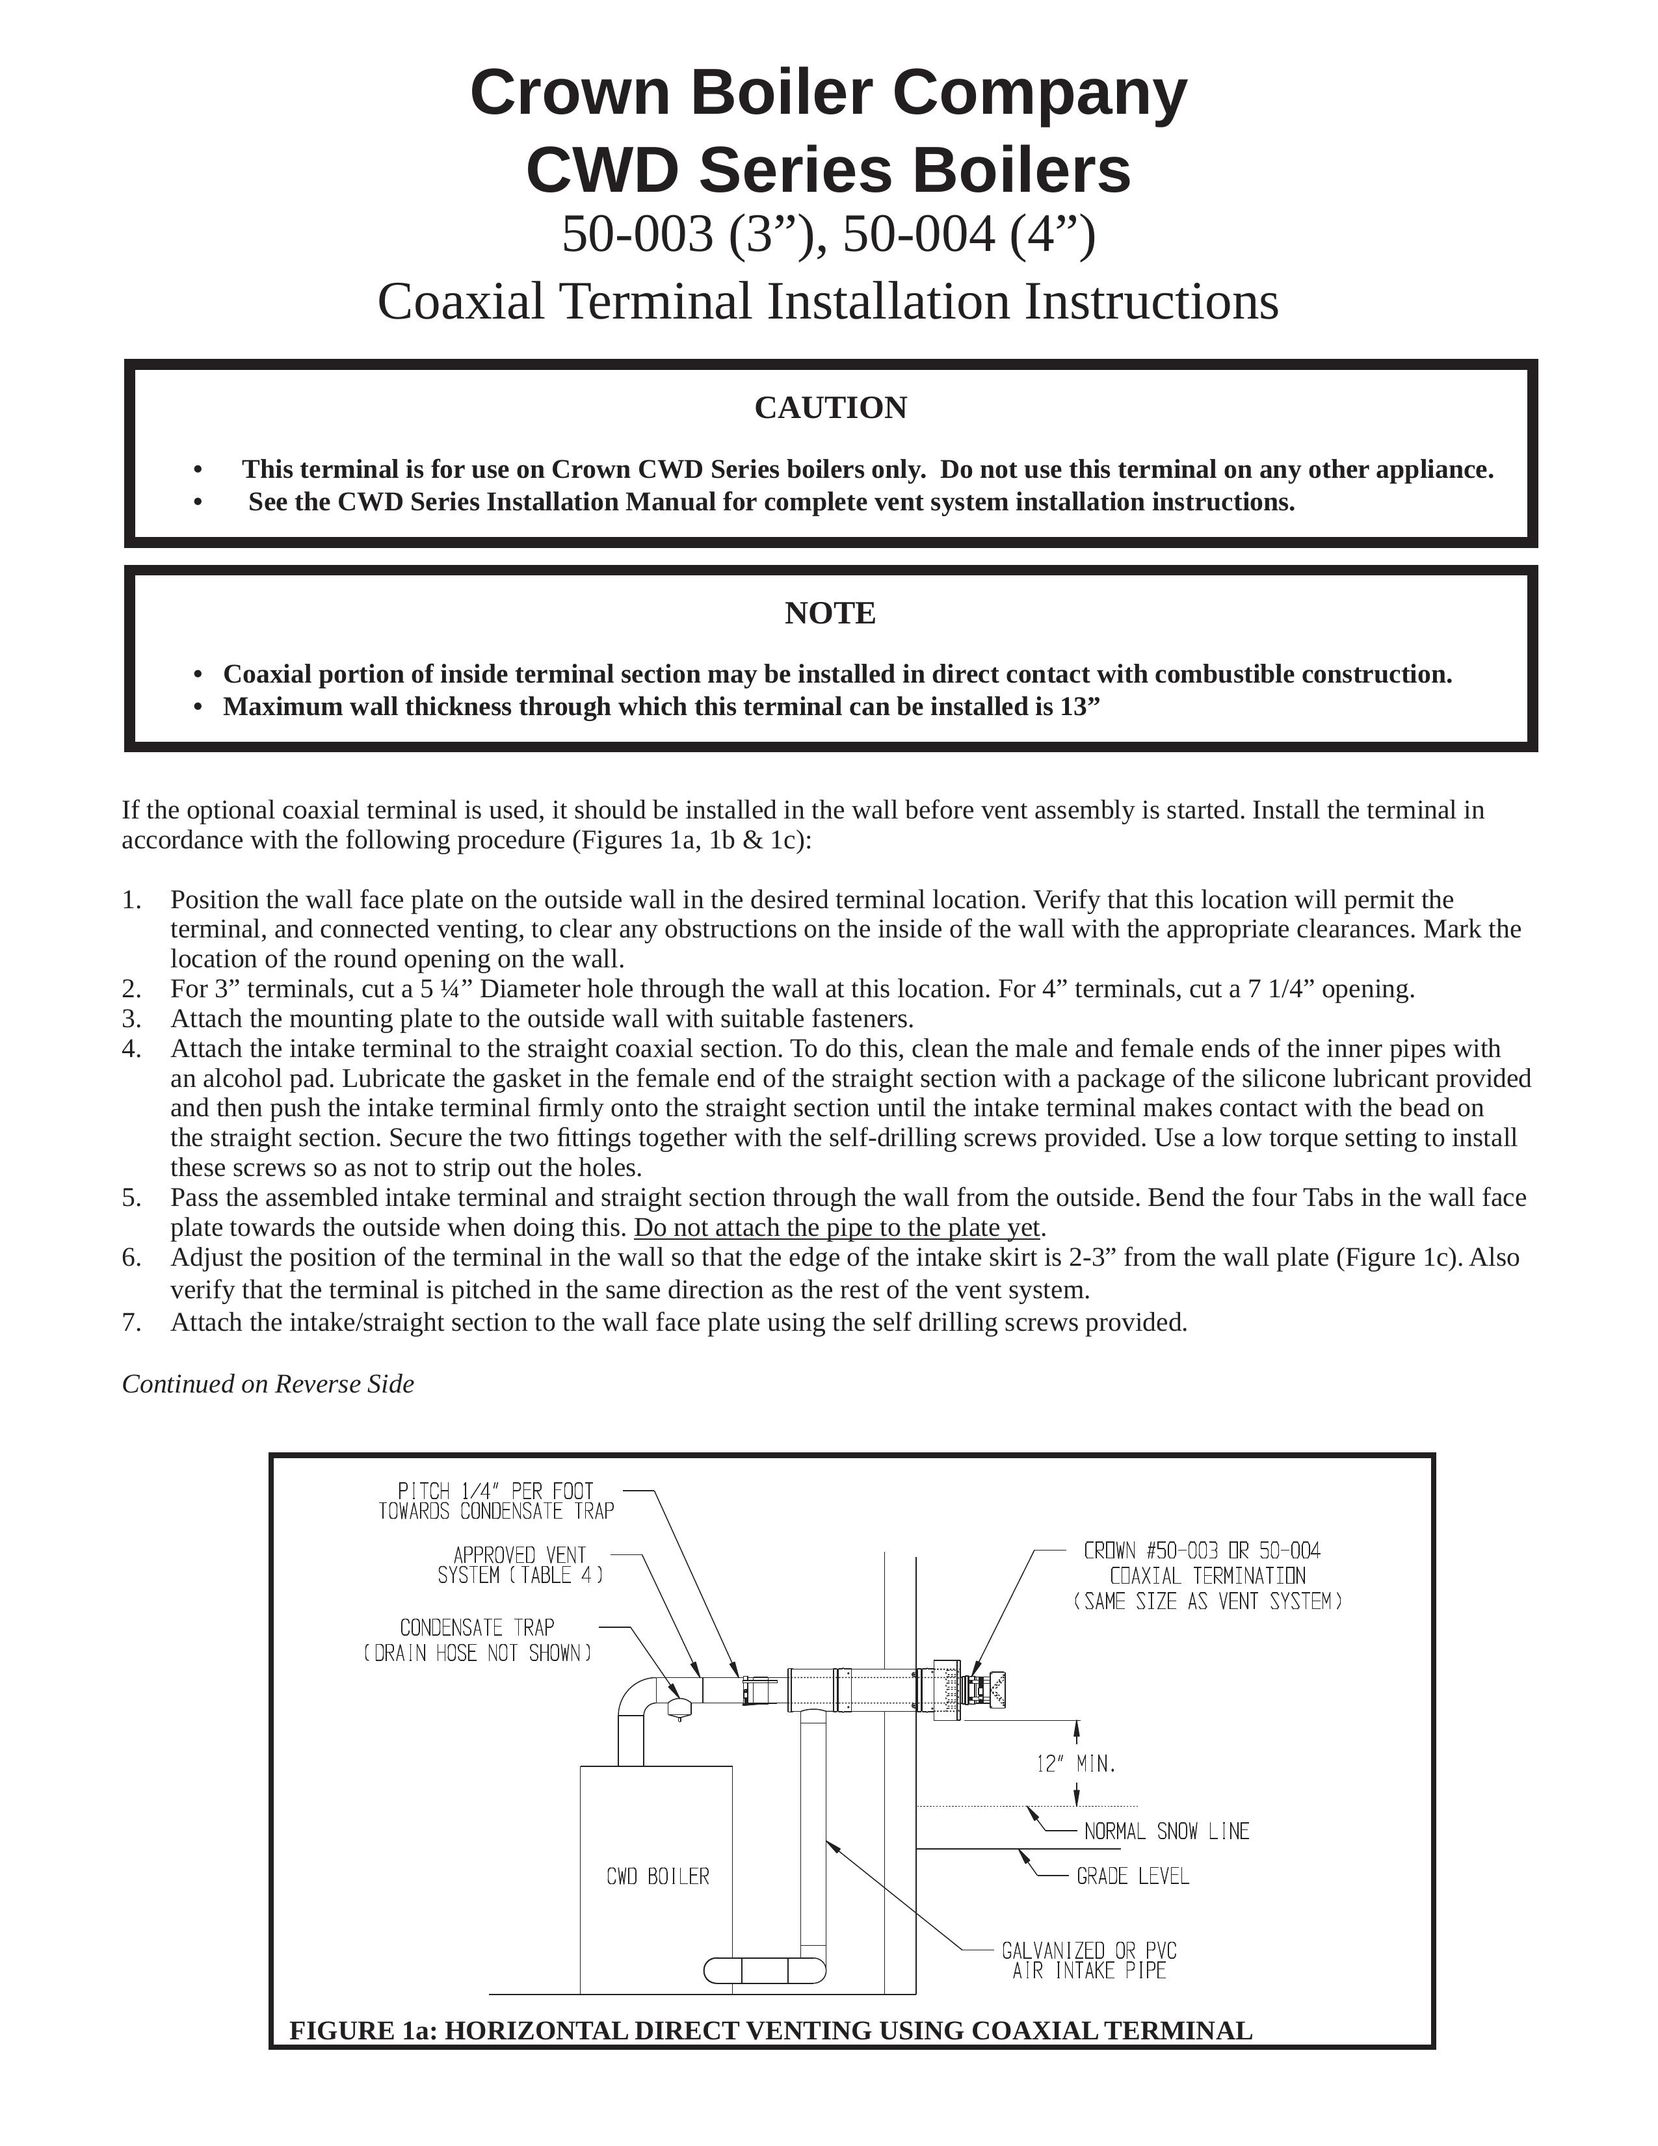 Crown Boiler 50-003 Boiler User Manual